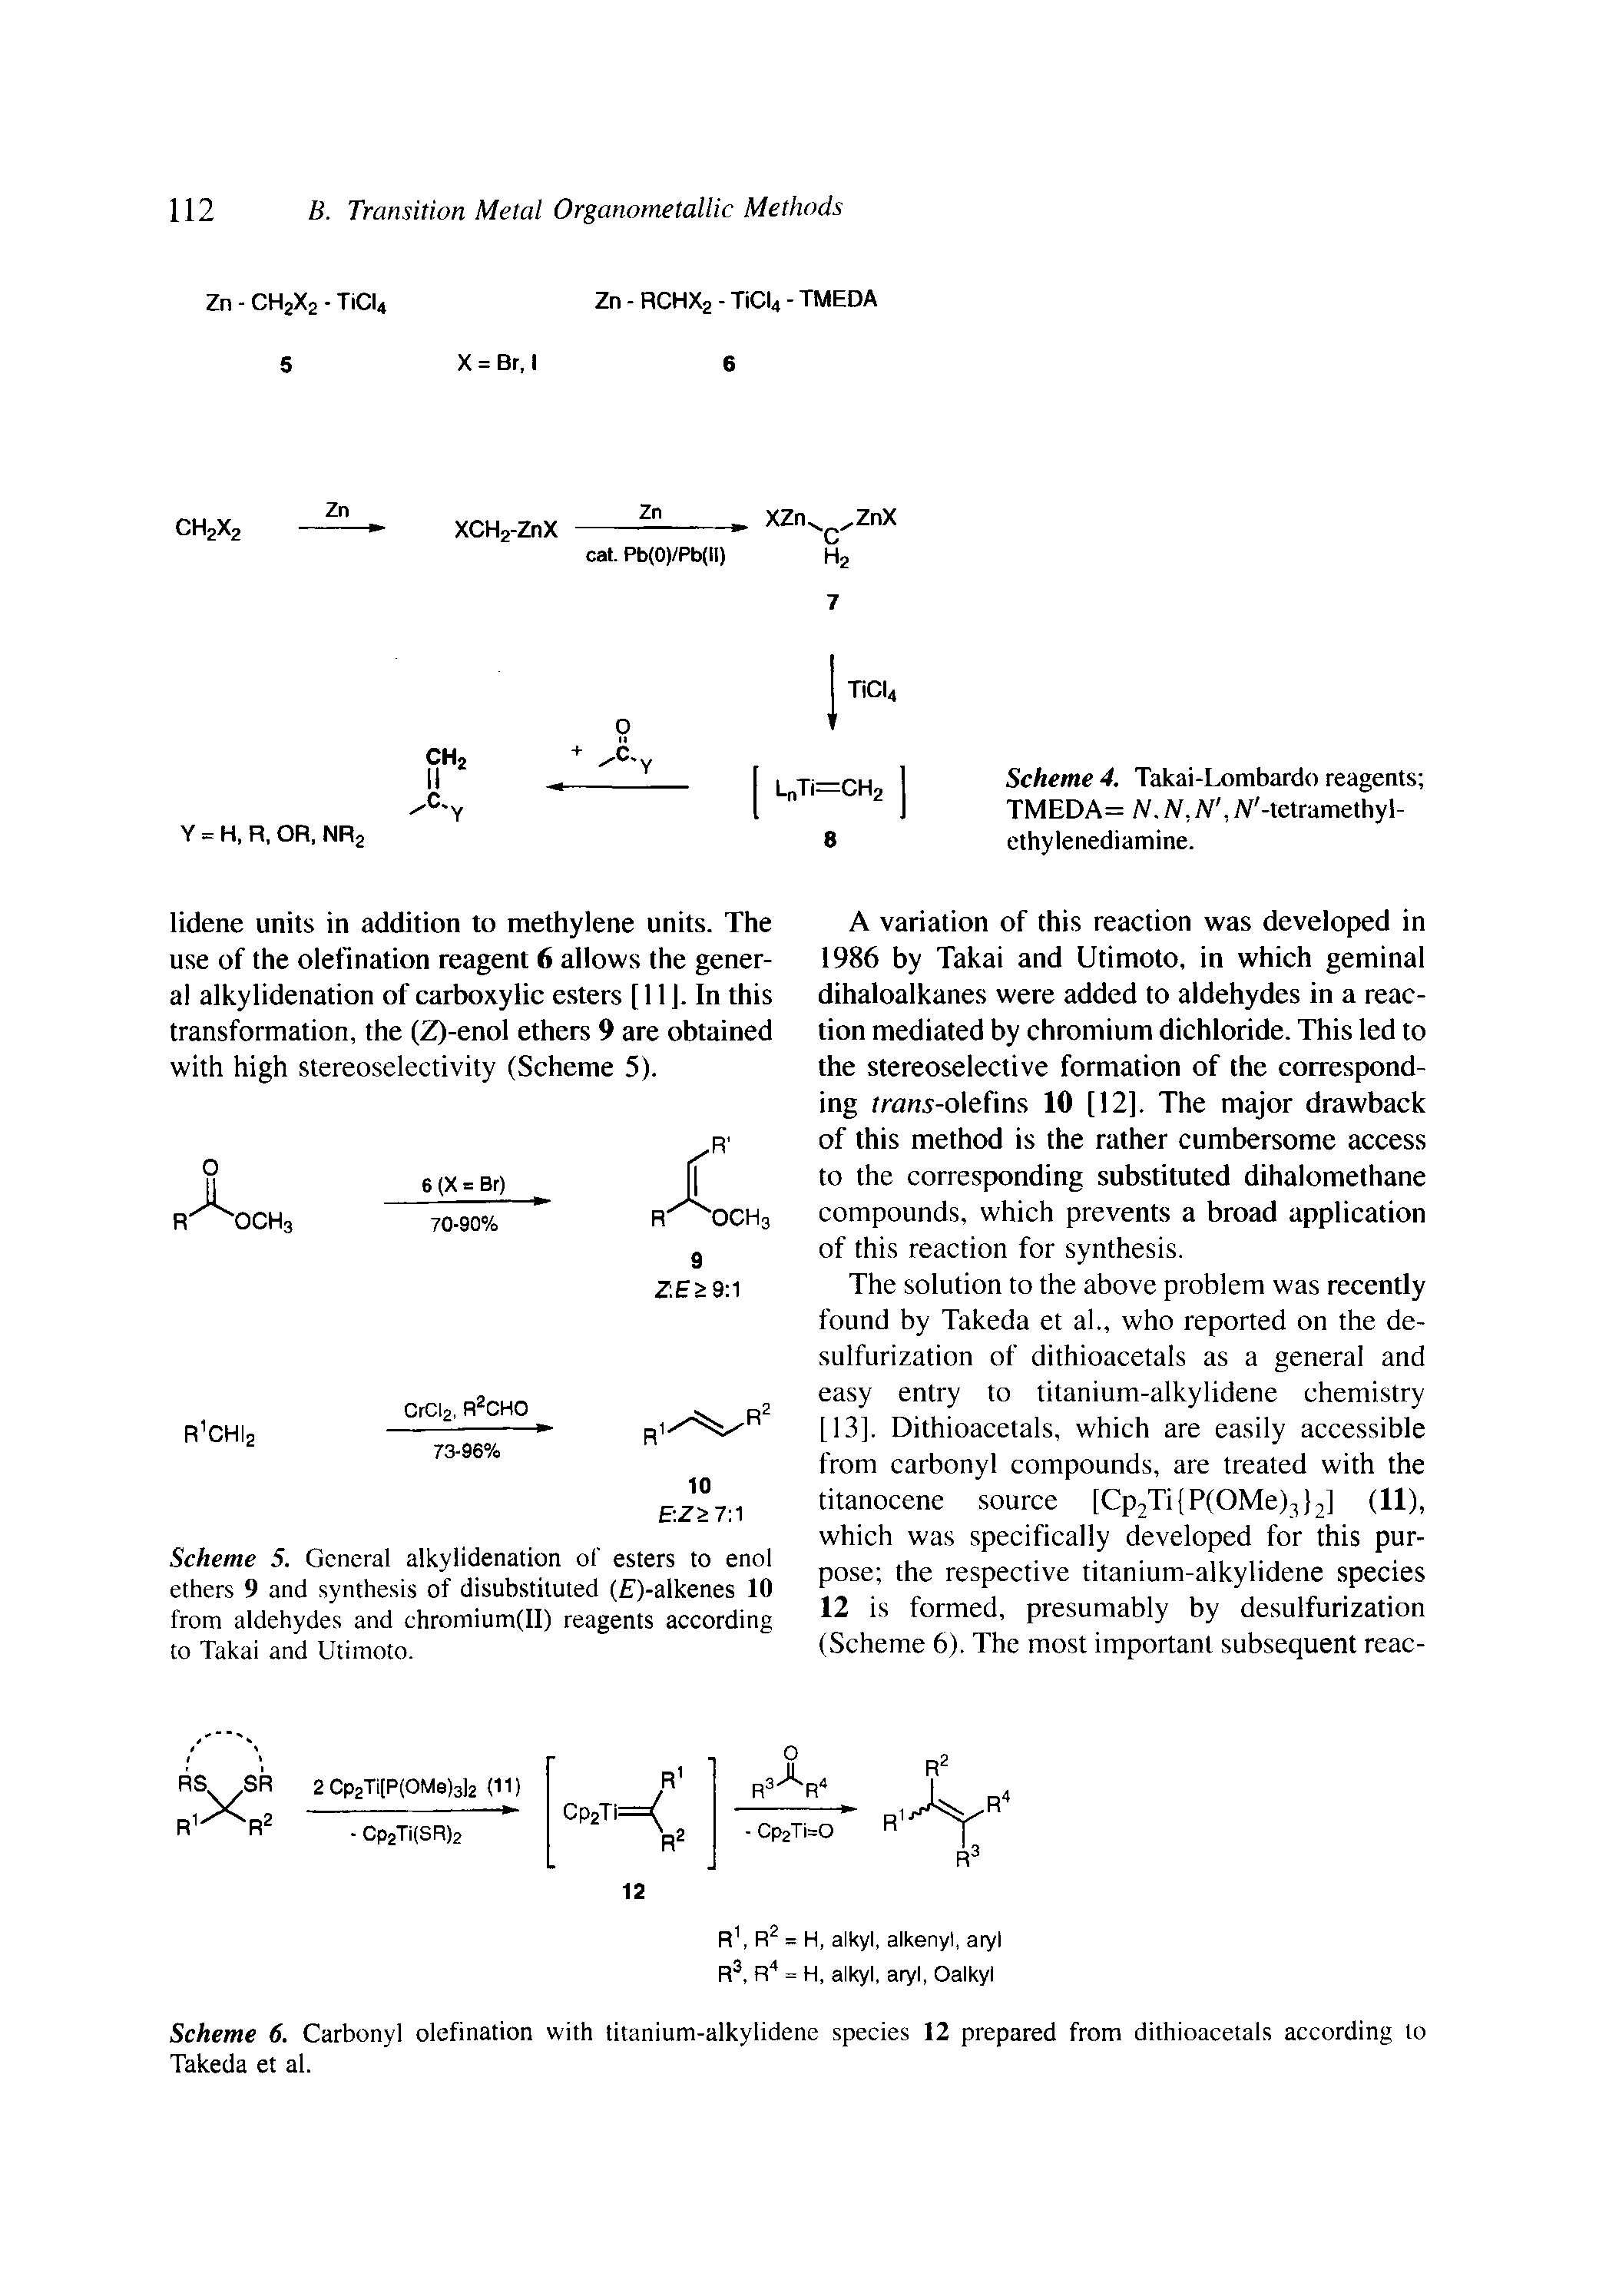 Scheme 4. Takai-Lombardo reagents TMEDA= N.iV,Af, N -tetramethyl-ethylenediamine.